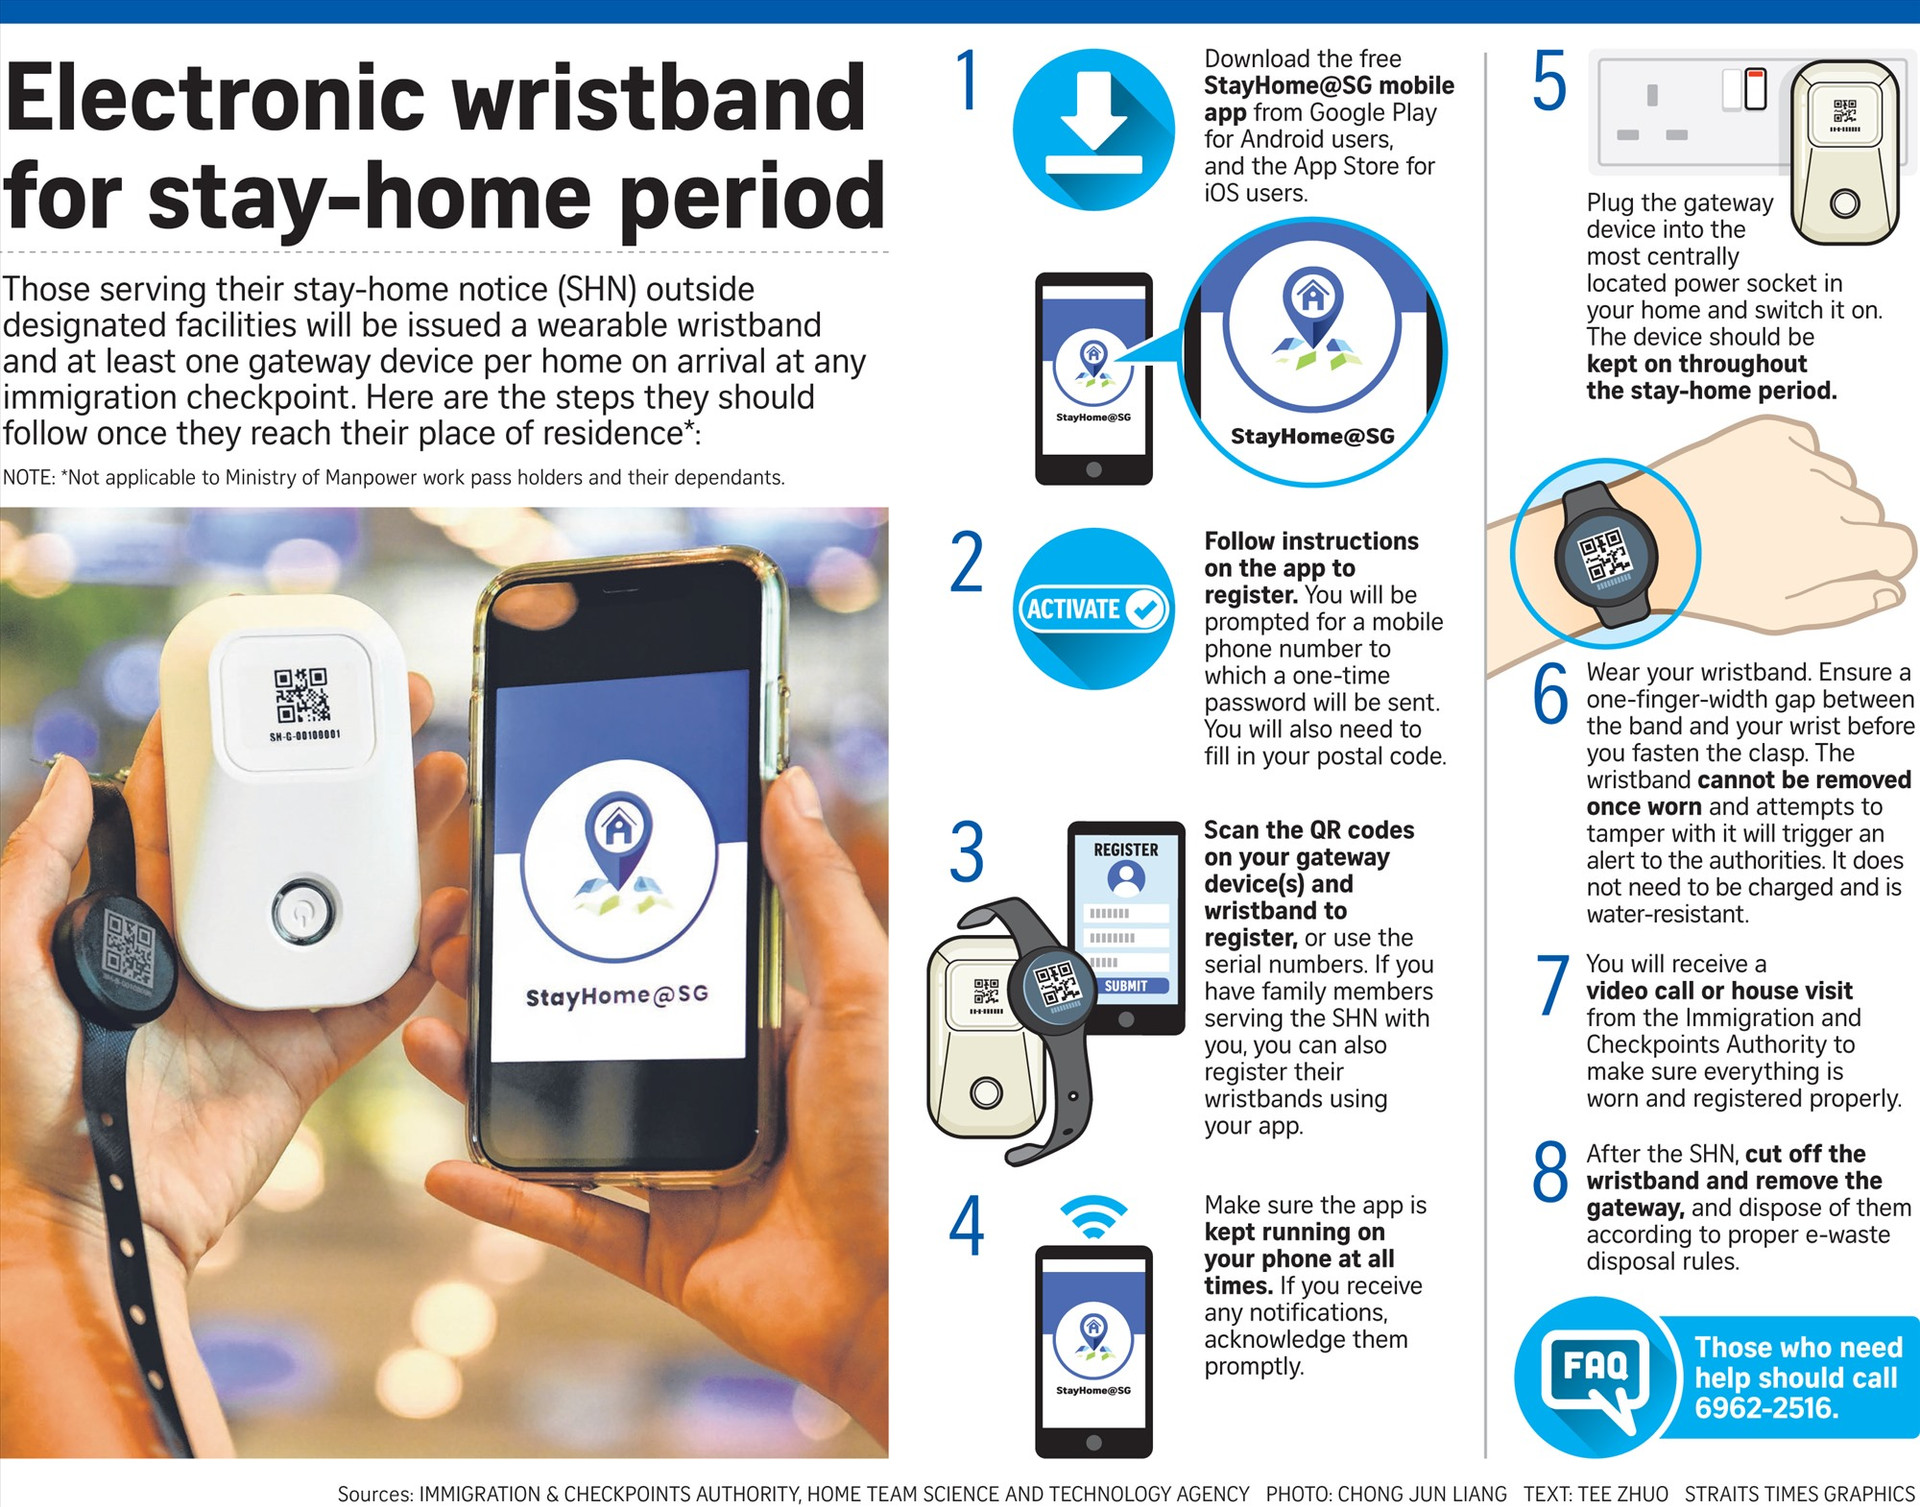 Báo Singapore hướng dẫn cách sử dụng thiết bị giám sát điện tử cho người nhập cảnh vào nước này. Ảnh: Strattimes